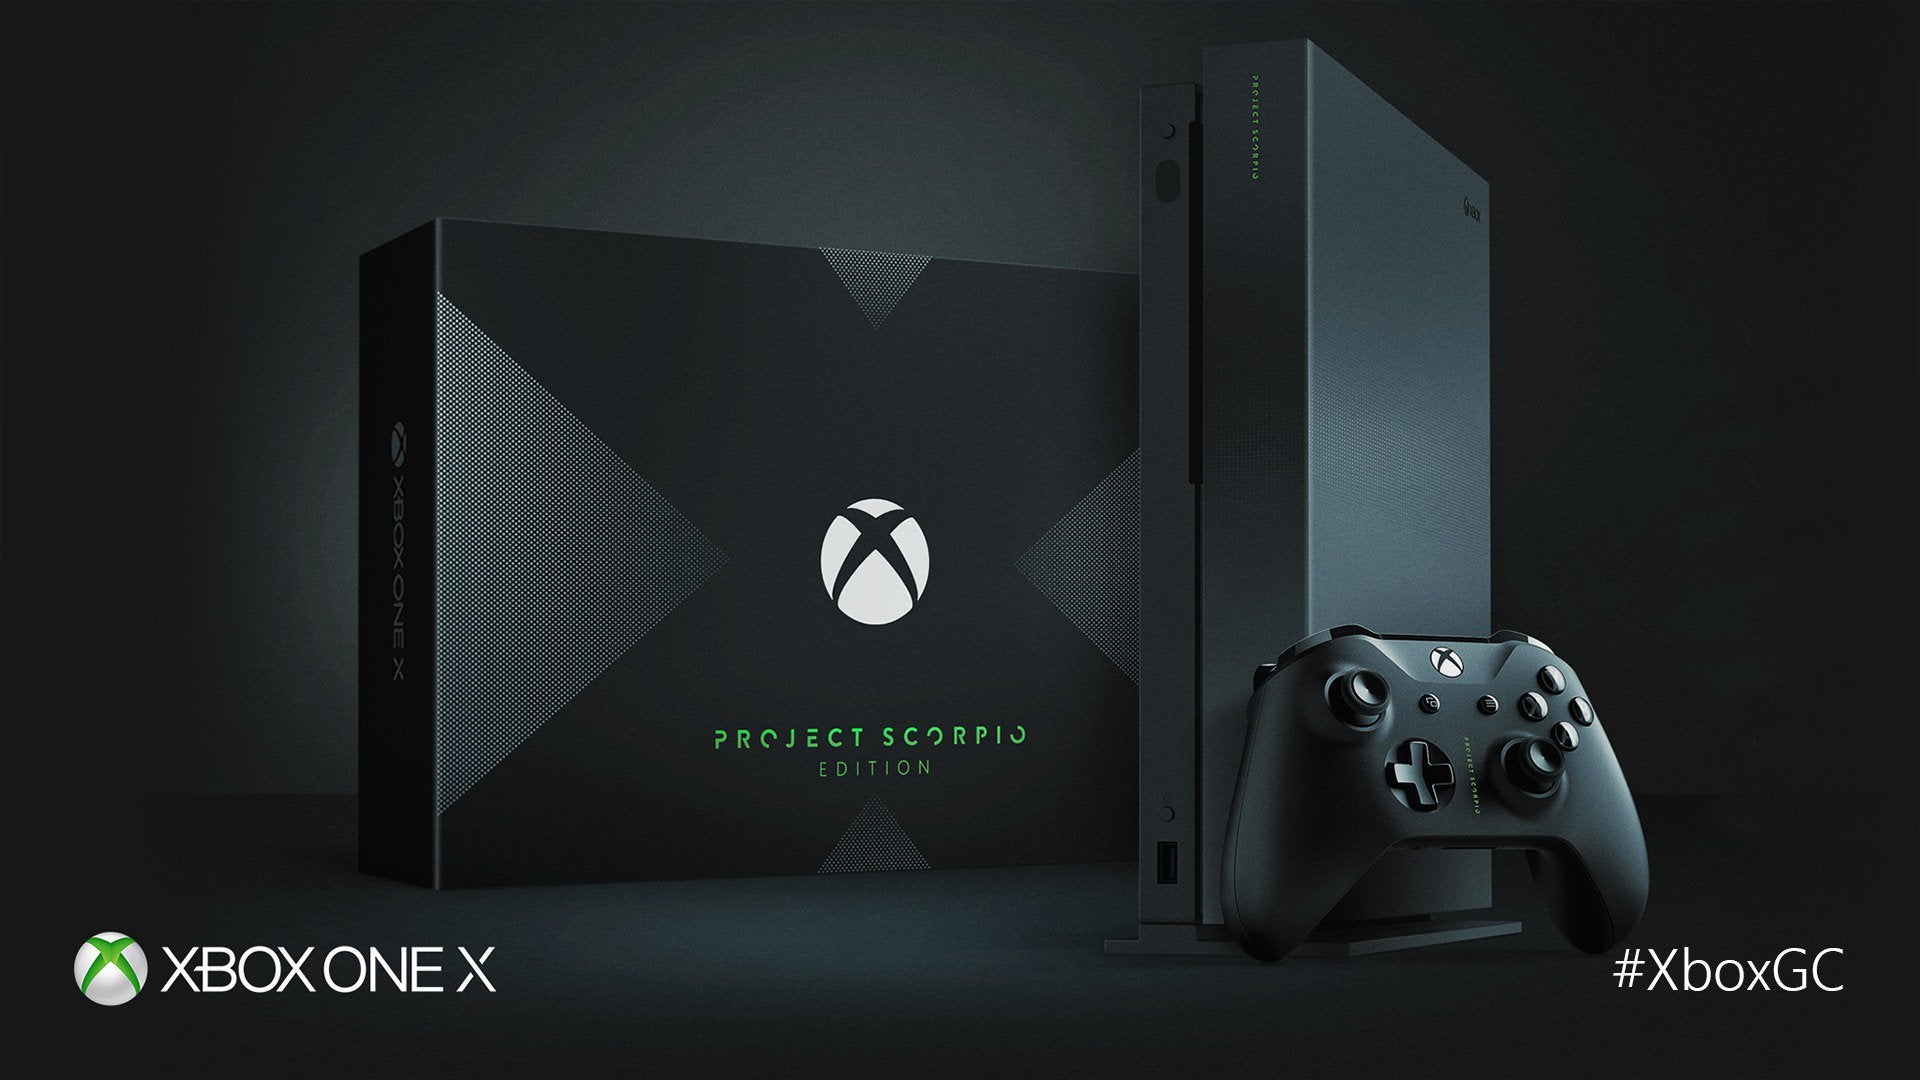 Xbox One X Project Scorpio Edition comes in a cool original Xbox 